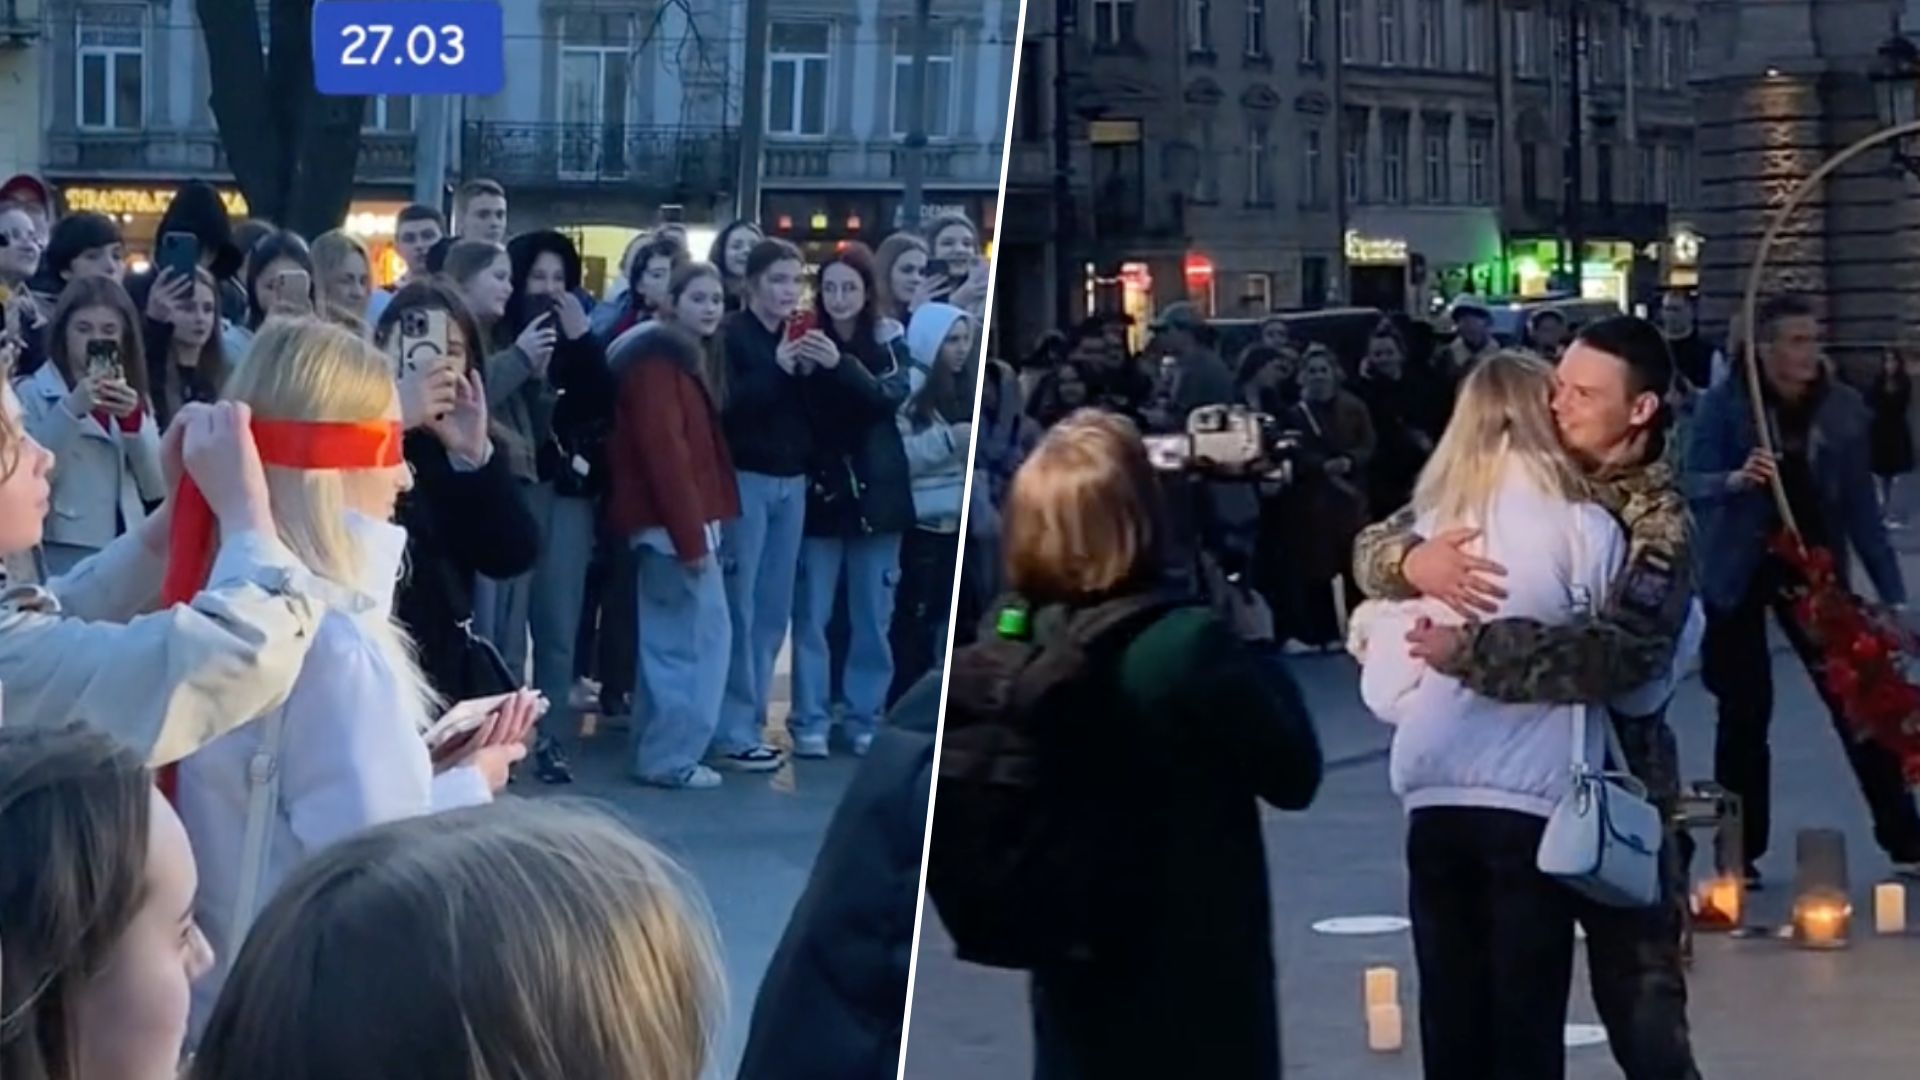 Військовий освідчився коханій у центрі Львова - відео пропозиції